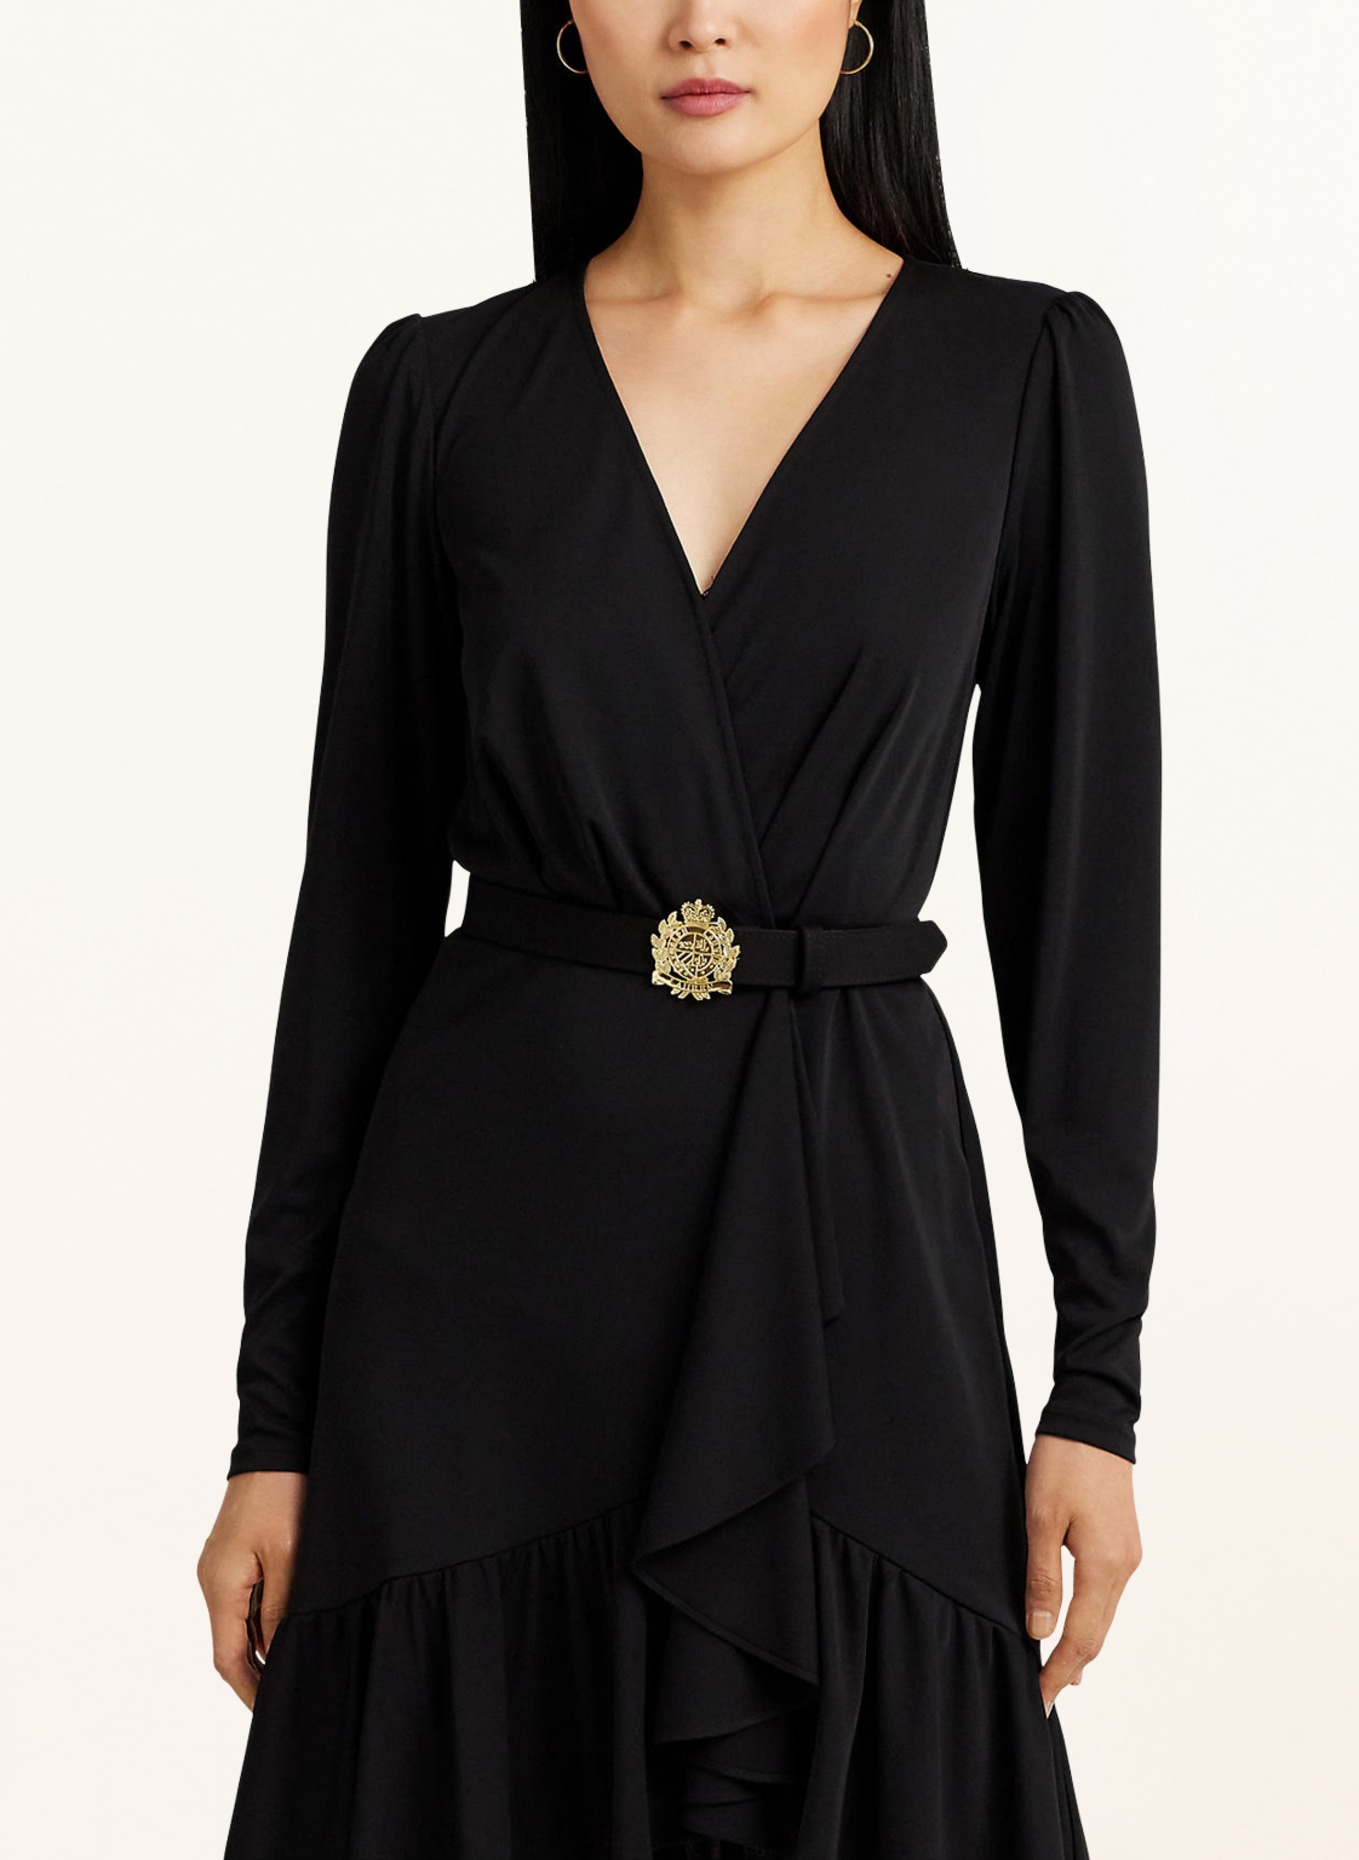 LAUREN RALPH LAUREN Jersey dress with ruffles, Color: BLACK (Image 4)